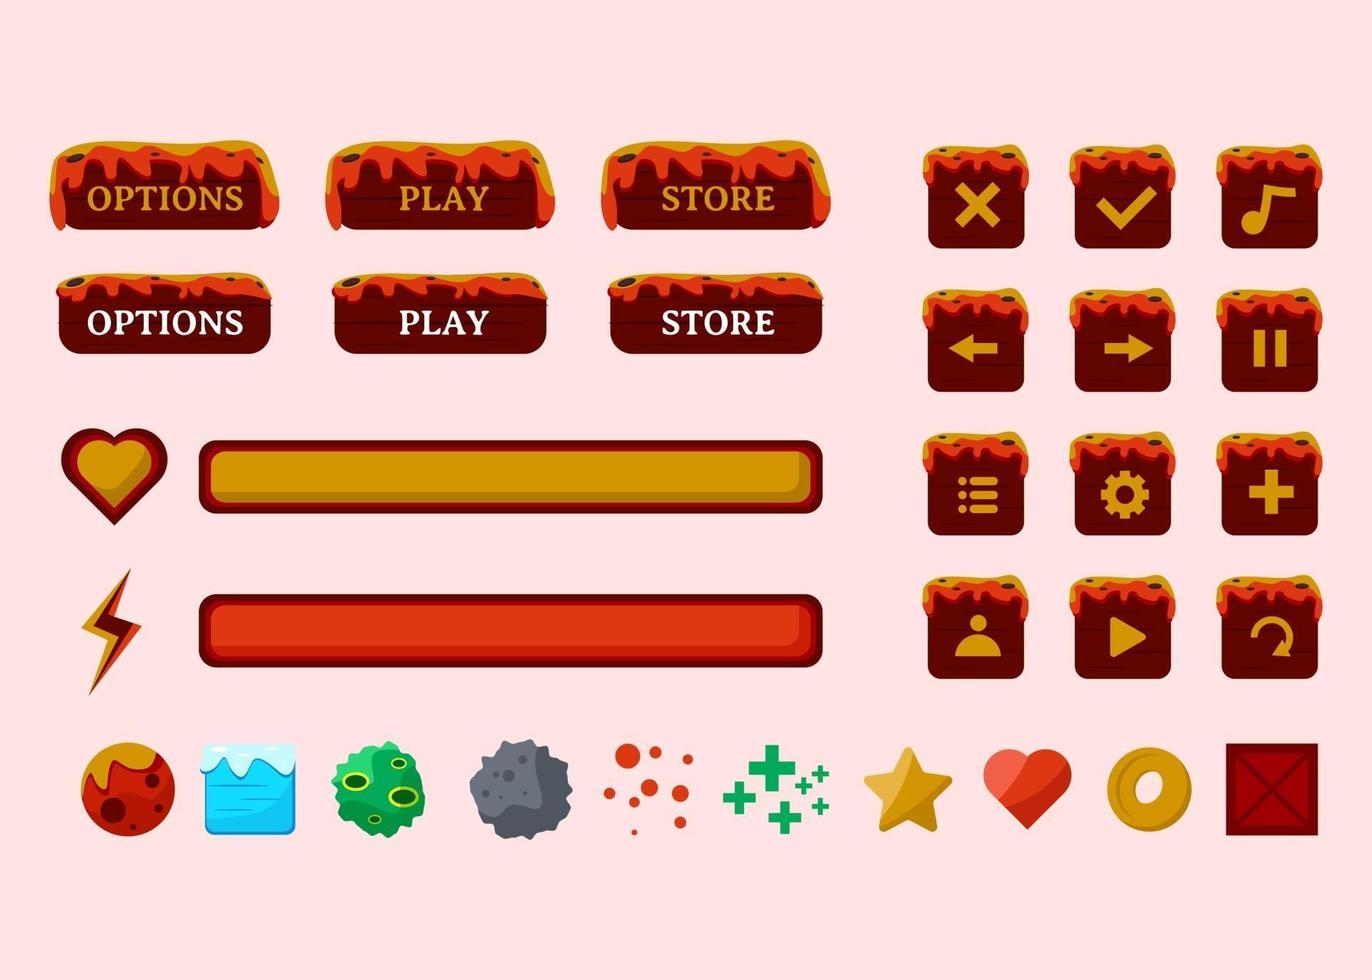 design per un set completo di pop-up, icone, finestre ed elementi del gioco del pulsante di selezione vettore